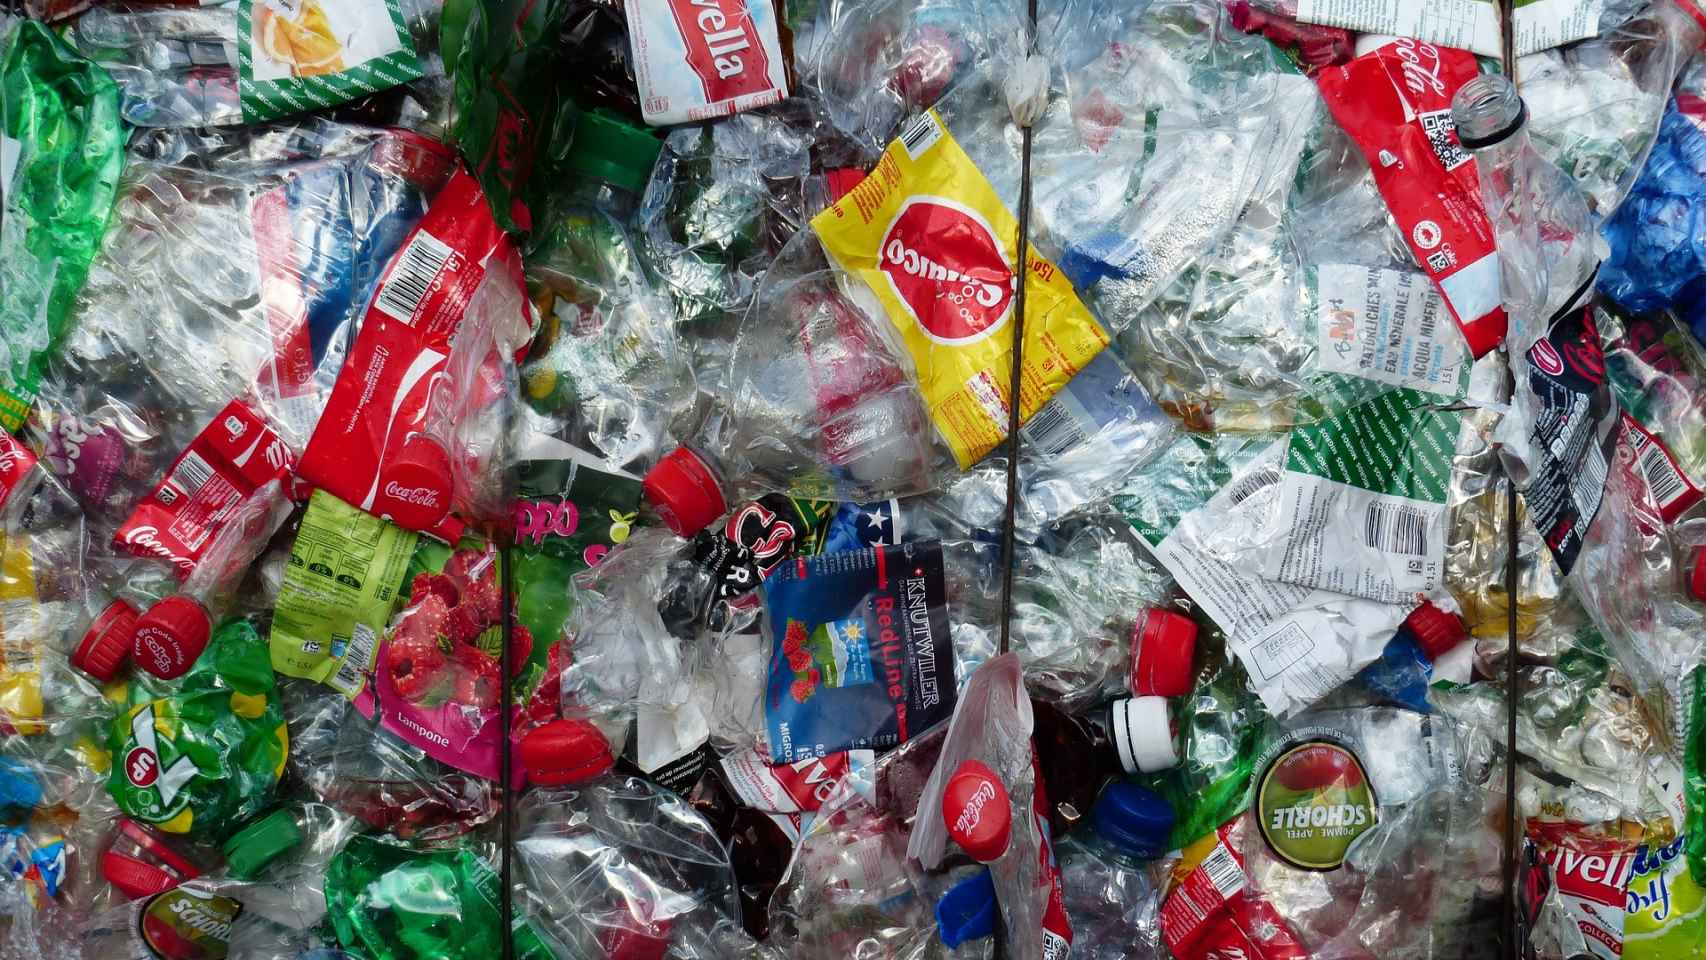 La Administración central calcula que el nuevo impuesto al plástico le reportará unos ingresos cercanos a los 700 millones de euros.